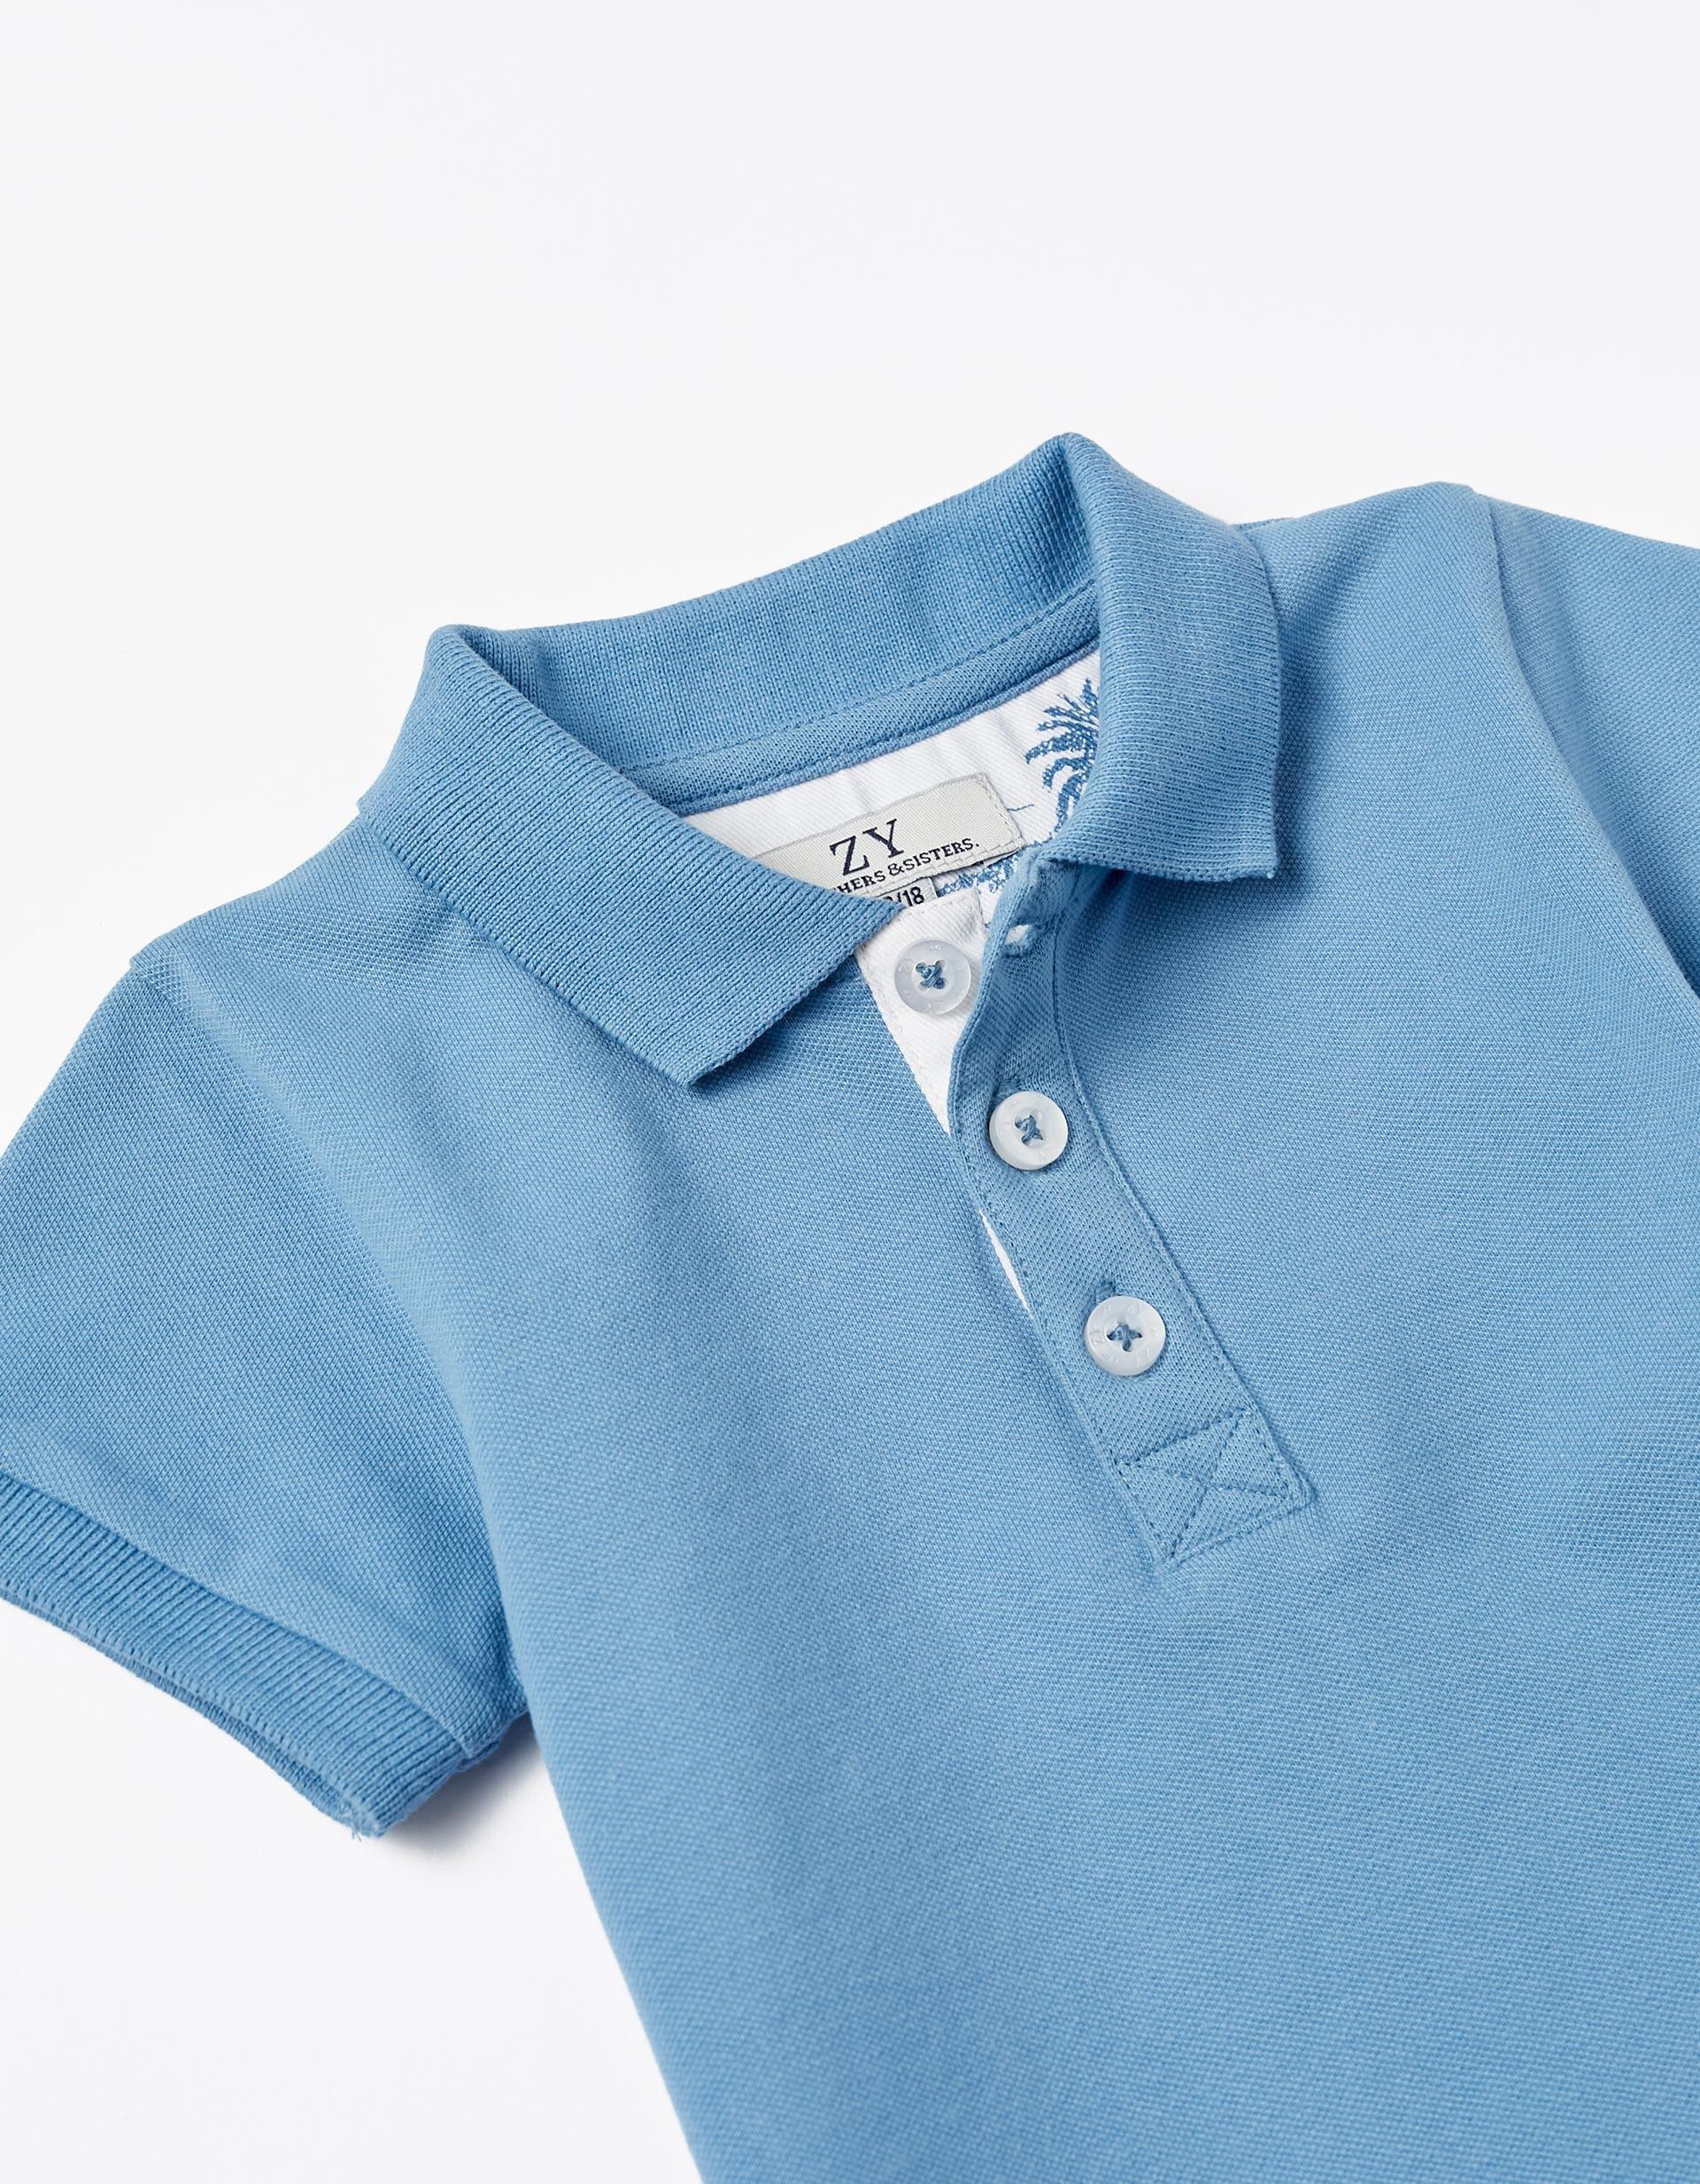 Zippy - Blue Polo Neck Shirt, Baby Boys